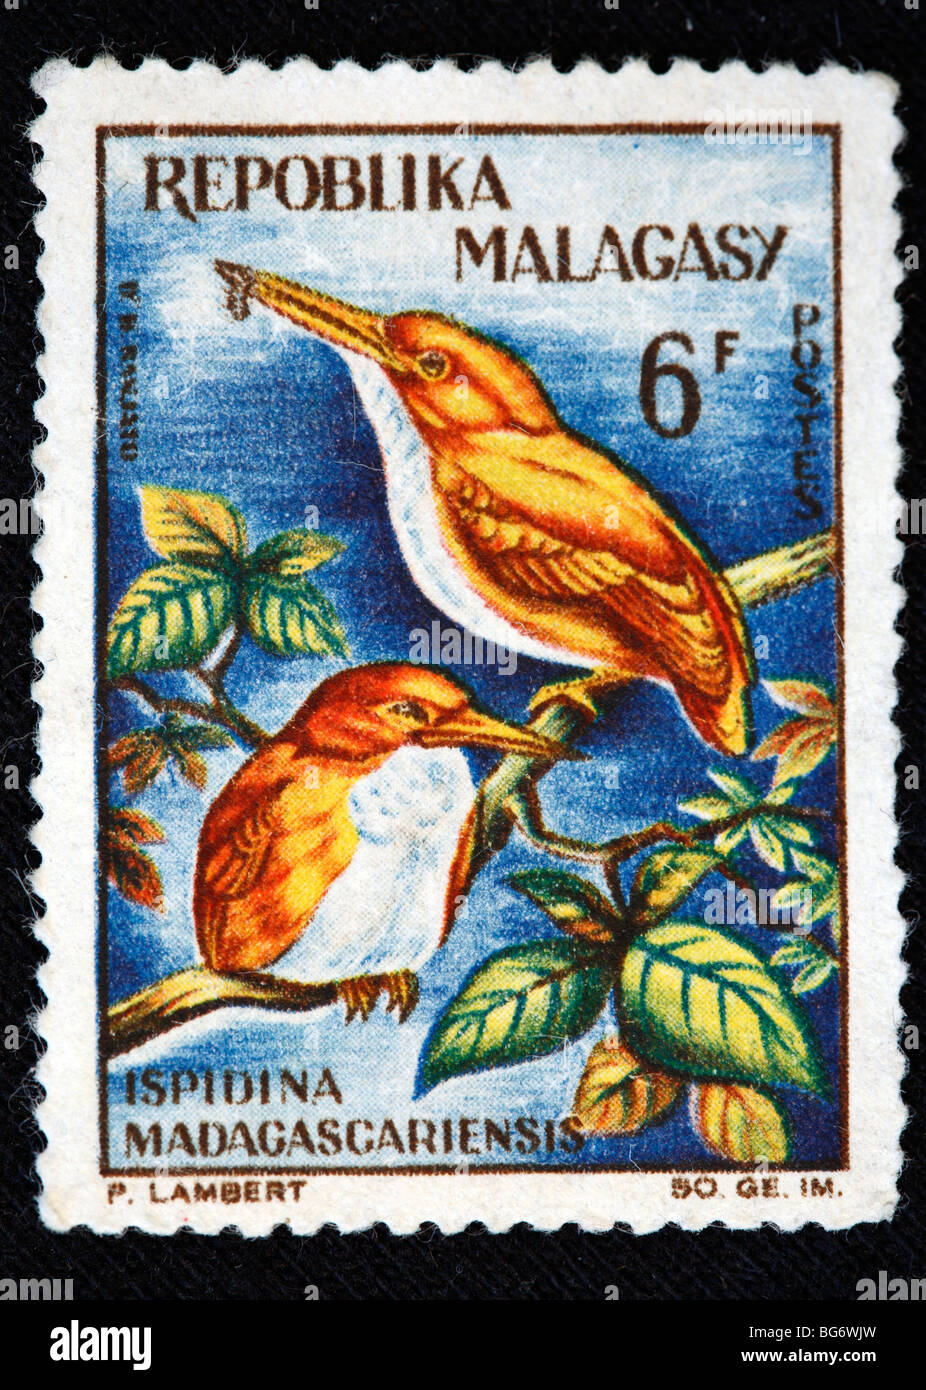 Ispidina madagascariensis, timbre-poste, Madagascar (Madagascar) Banque D'Images